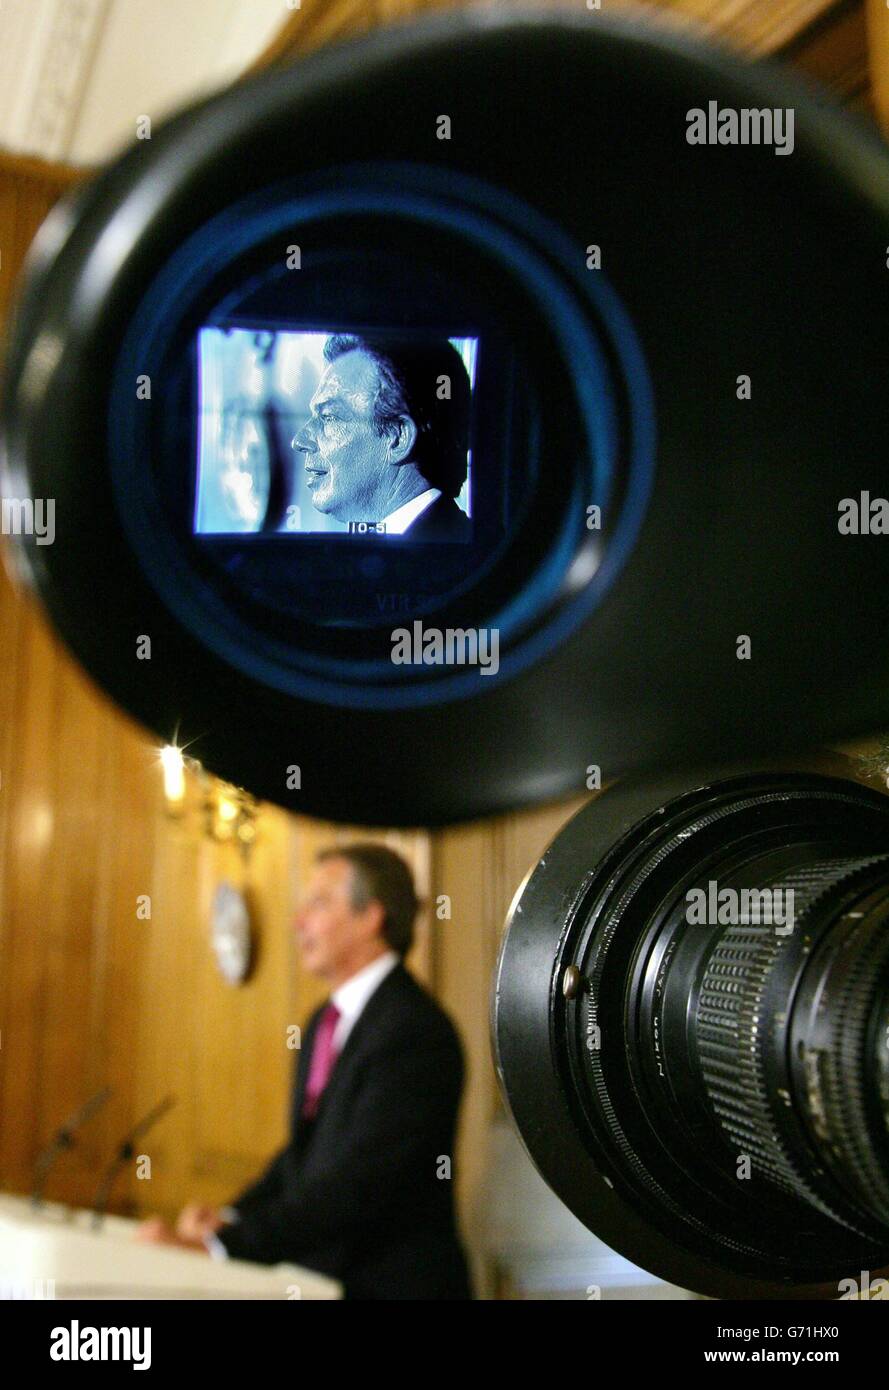 Il primo ministro Tony Blair parla ai media durante la sua conferenza stampa mensile a 10 Downing Street. Tony Blair ha insistito sul fatto che aveva ragione a intraprendere un'azione militare contro l'Iraq. Nonostante i poveri laburisti che si sono manifestati in seno al consiglio locale e alle elezioni europee, in parte accusati dai ministri di un voto di protesta contro la guerra, il primo ministro ha difeso con forza il rovesciamento di Saddam Hussein. Foto Stock